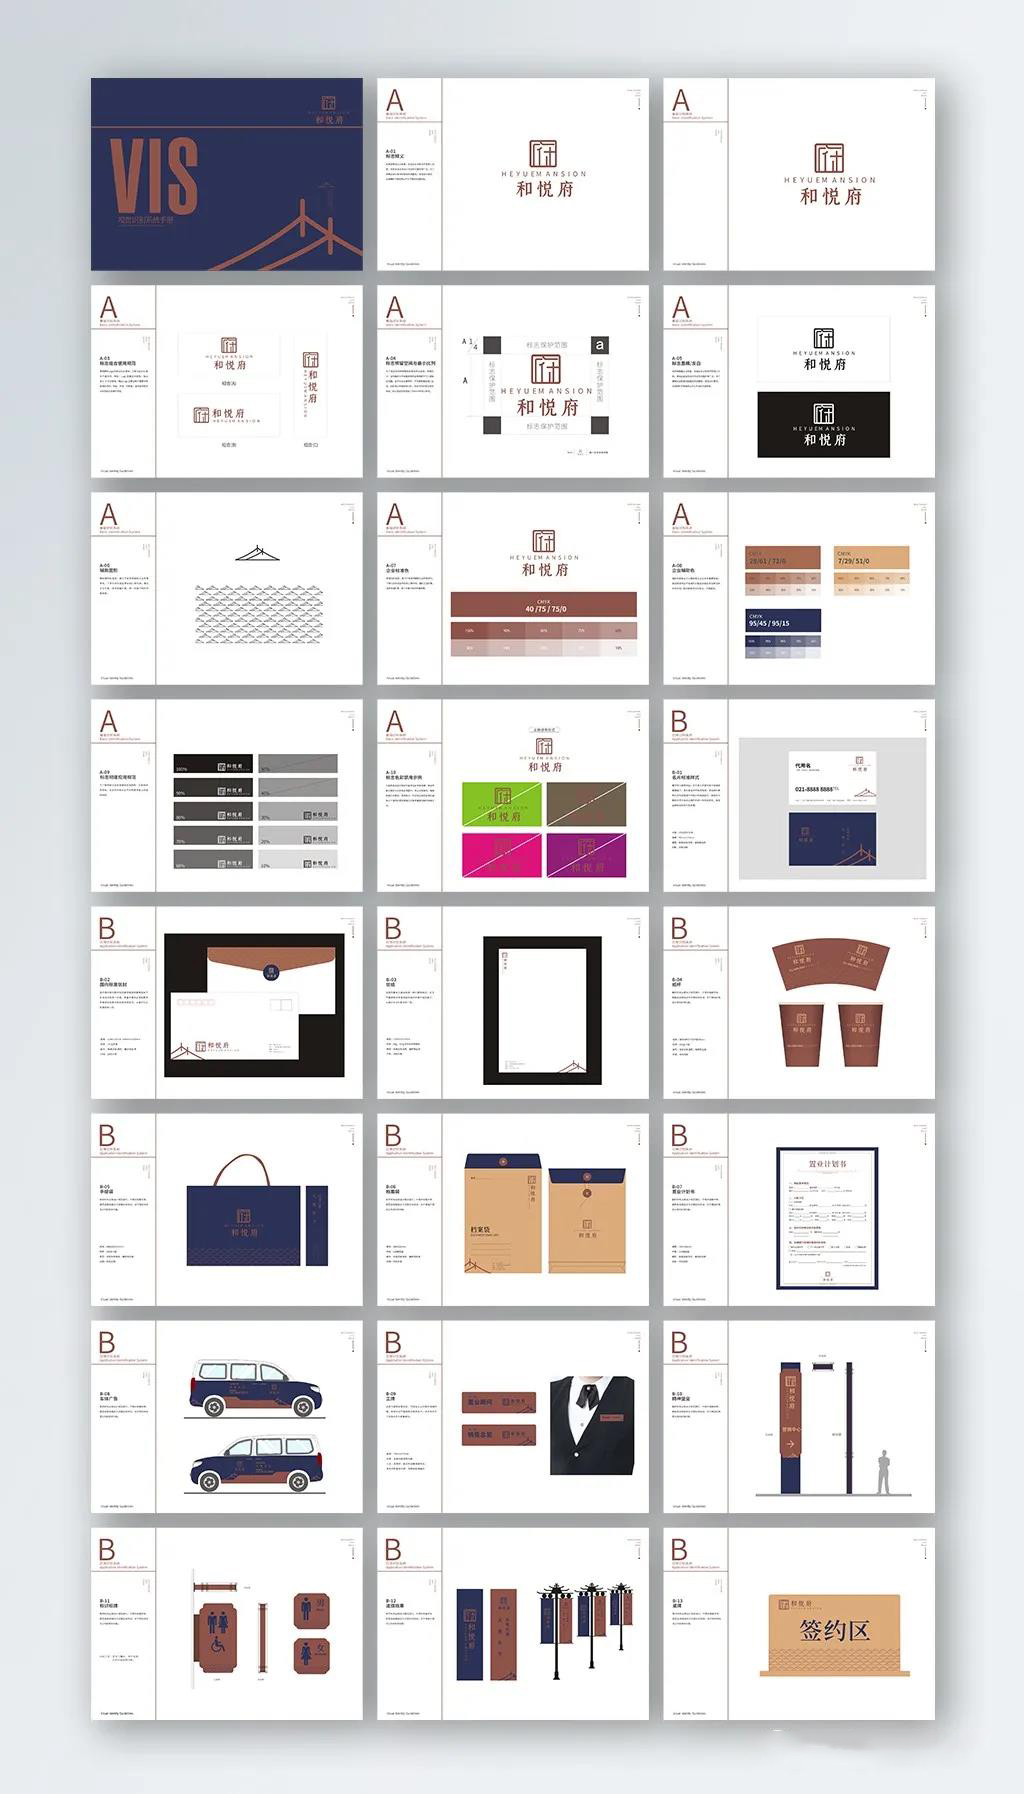 82套公司企业品牌VI视觉标识设计合集，AI/ID/CDR格式，全套手册毕业作品模板 图片素材 第2张